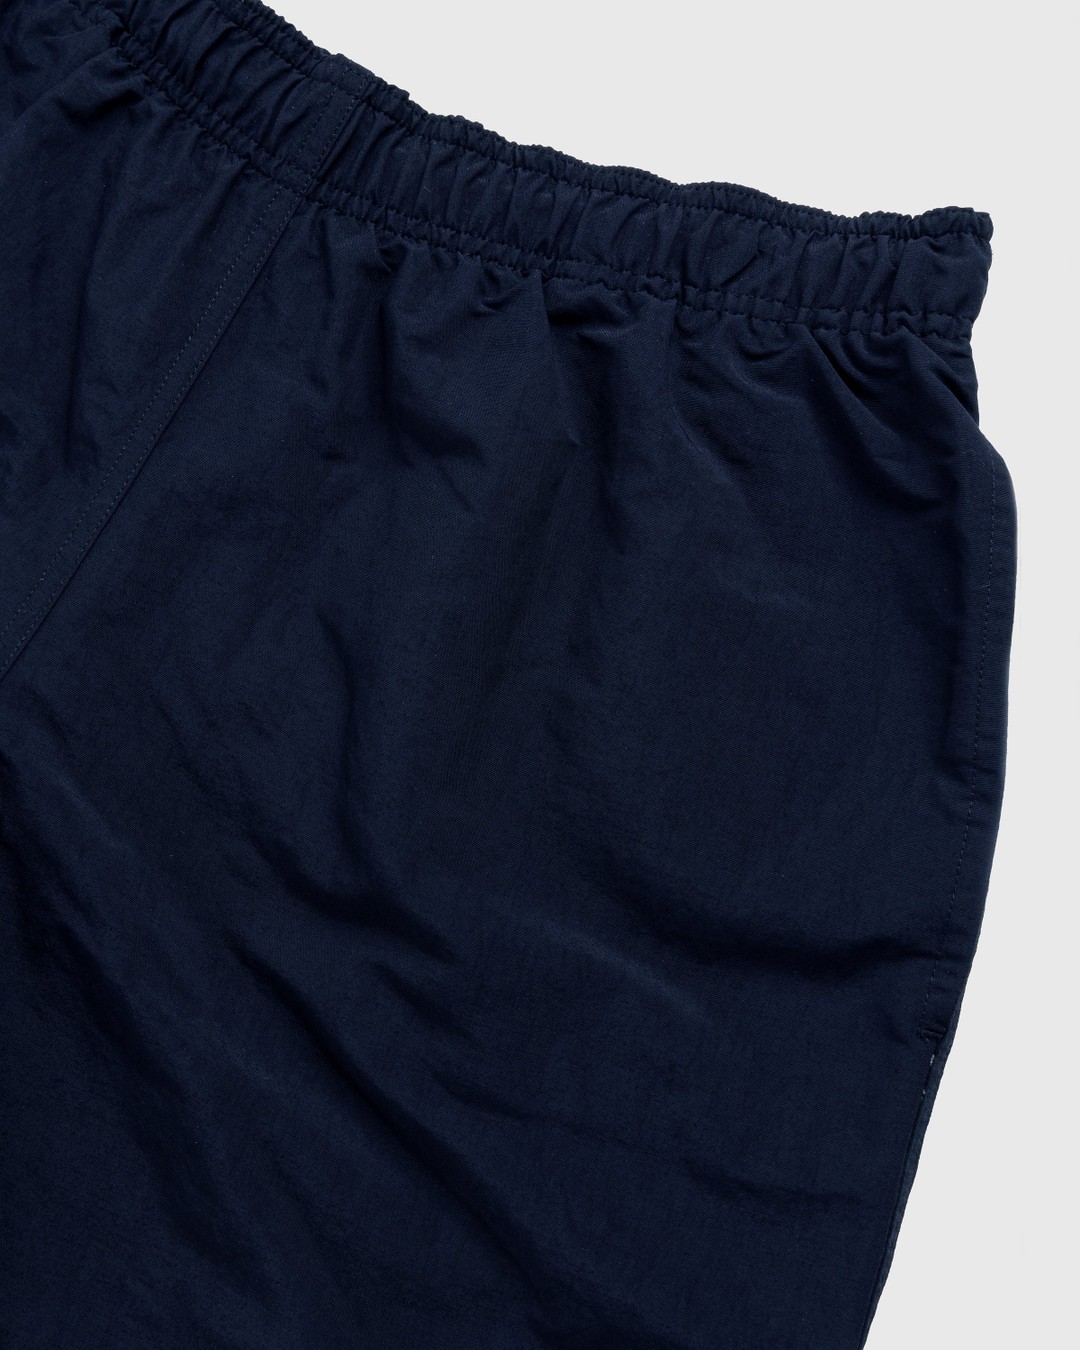 RUF x Highsnobiety – Water Shorts Navy - Swim Shorts - Blue - Image 5